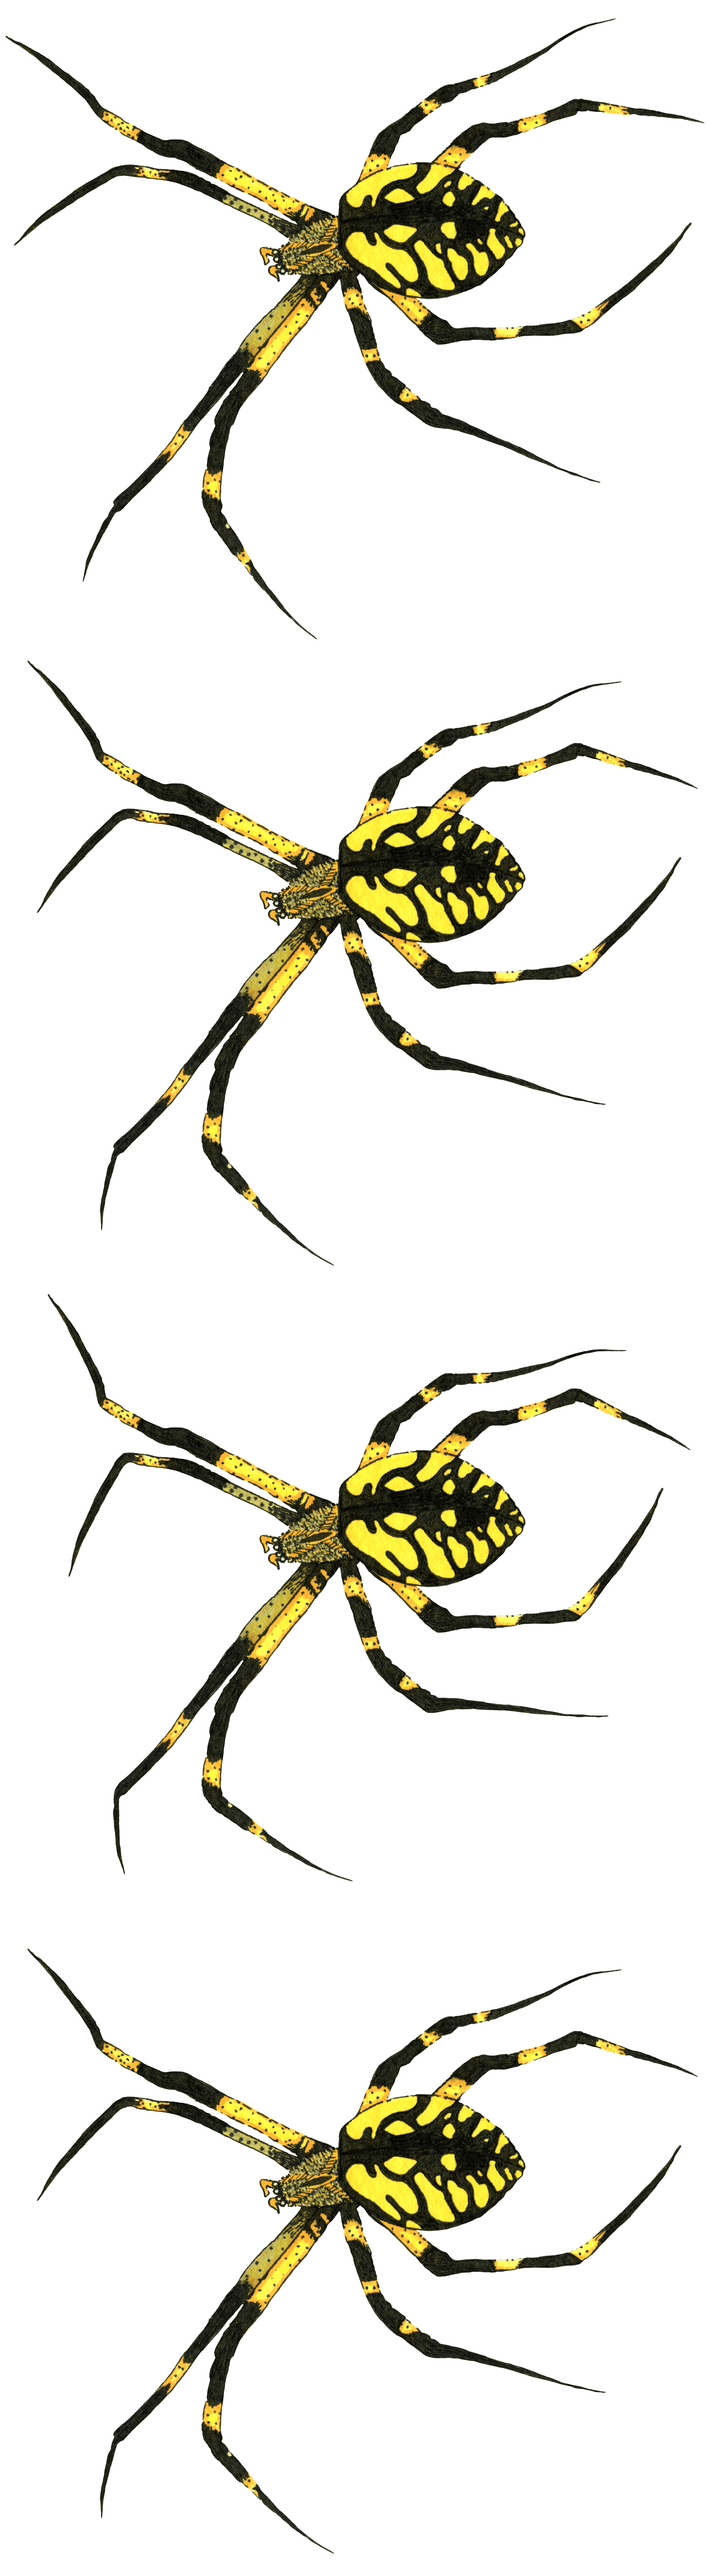 Garden Spider #1